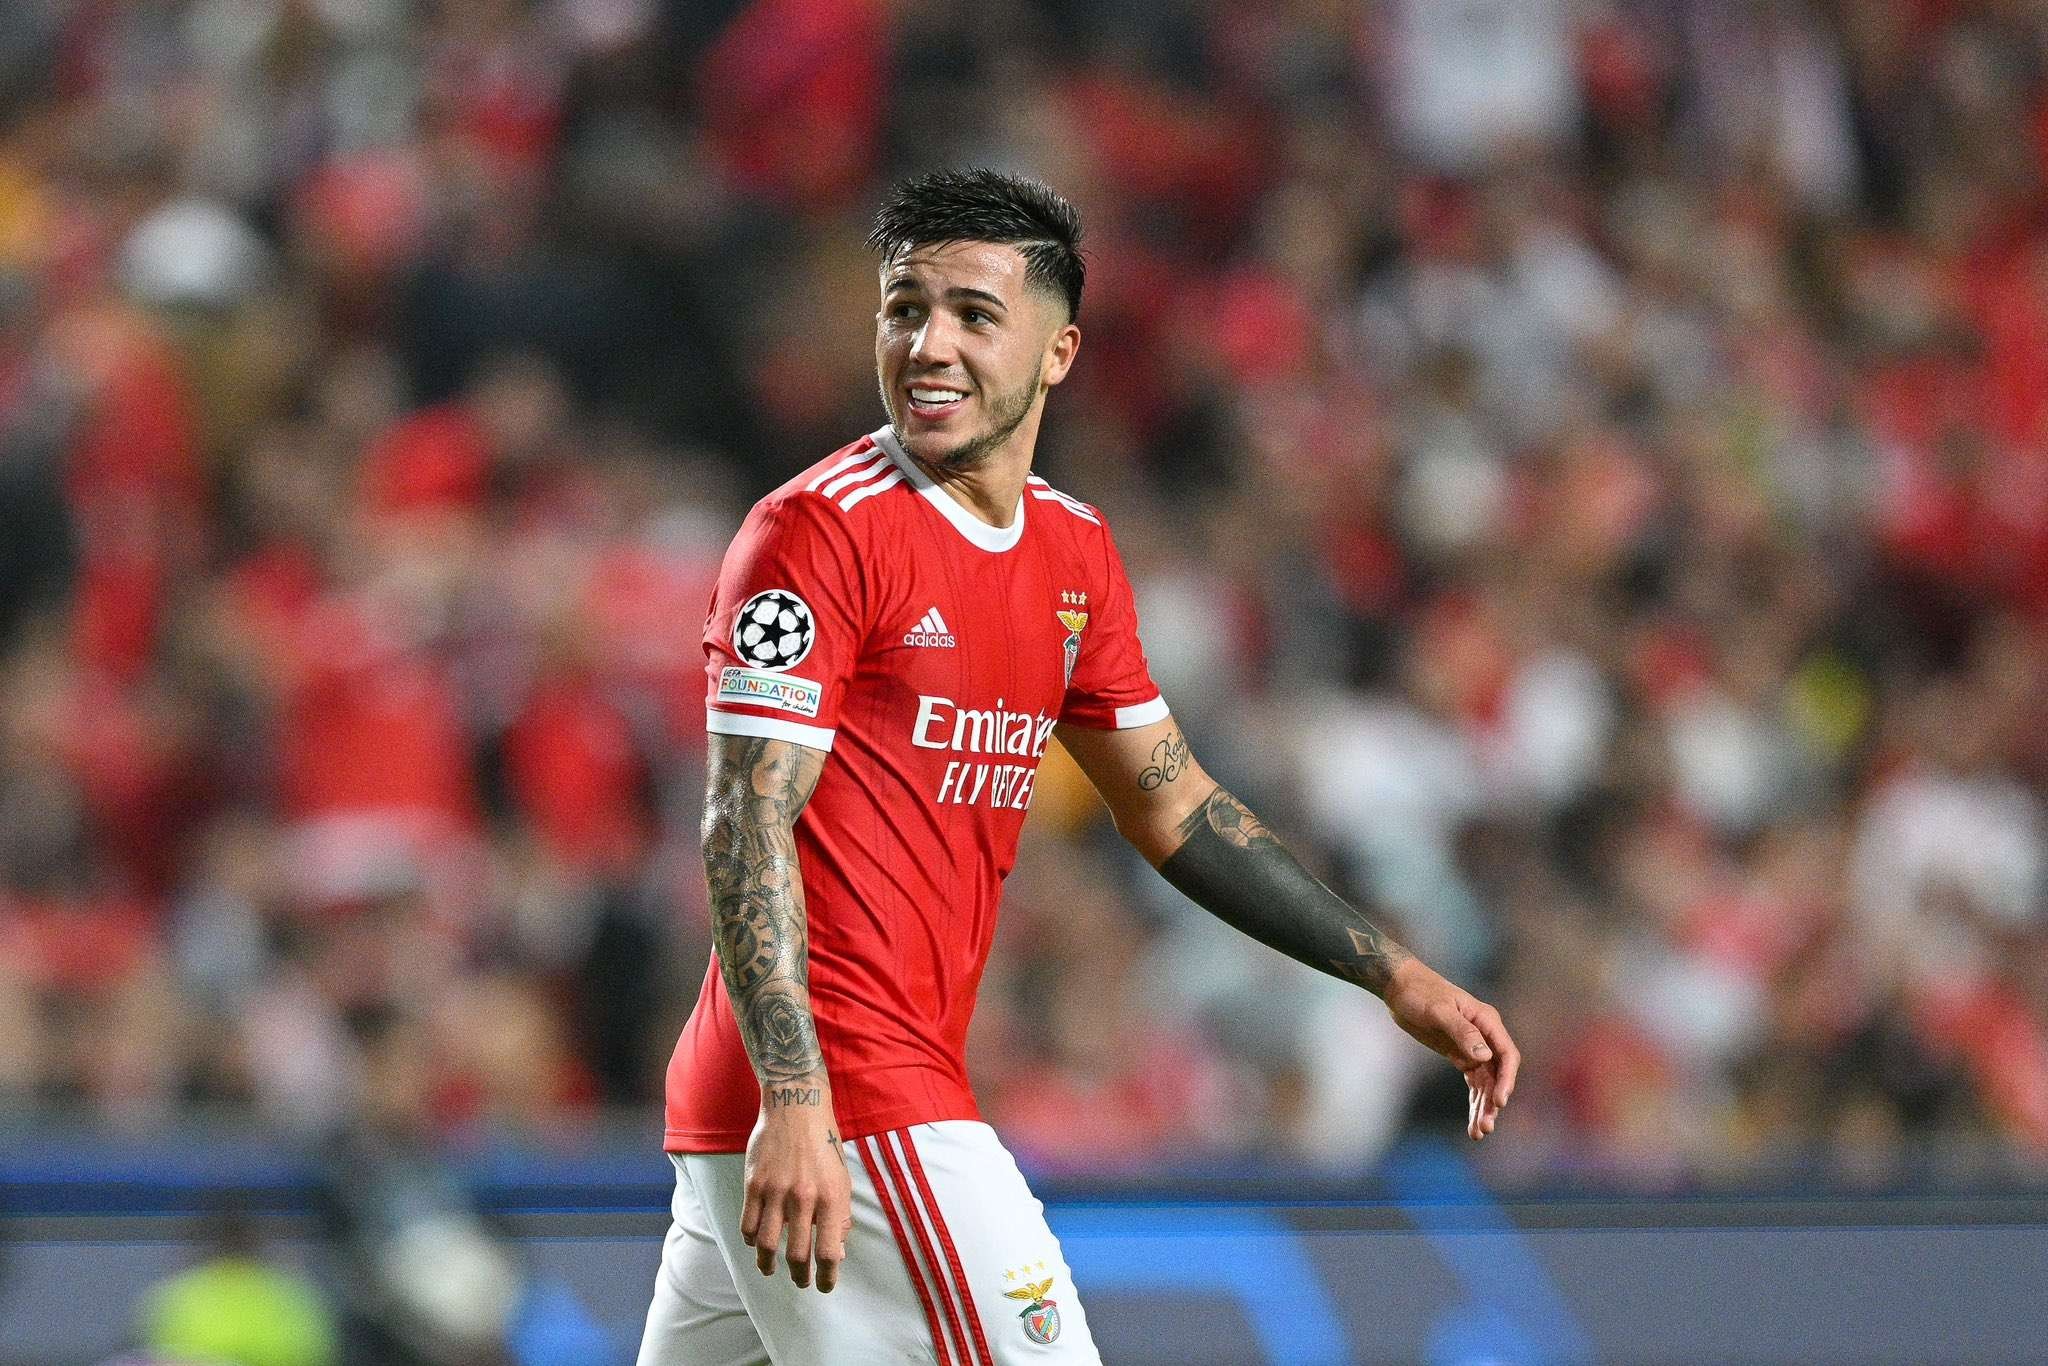 Bintang Benfica dan Timnas Argentina, Enzo Fernandez, beri isyarat bertahan di Benfica dan menolak pinangan Chelsea. (Foto: Twitter/@FabrizioRomano)